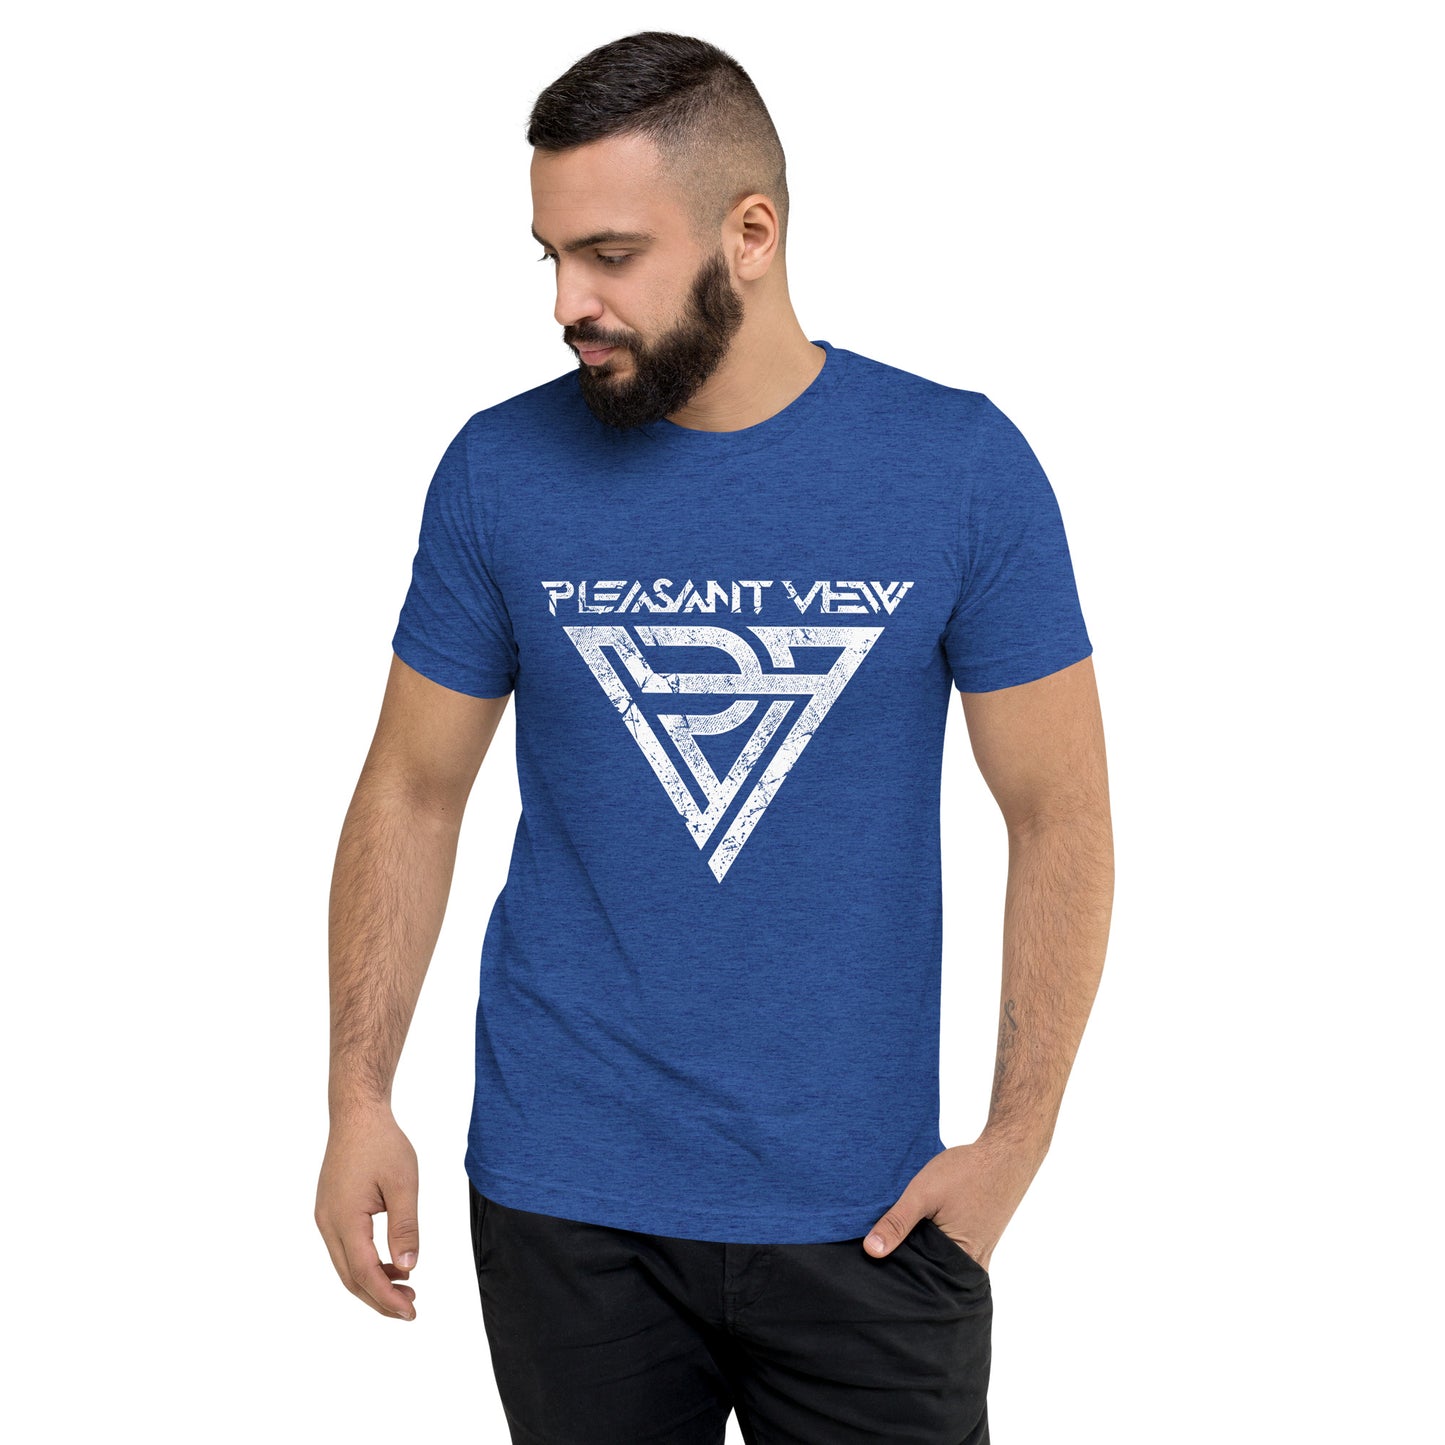 PV Short sleeve t-shirt